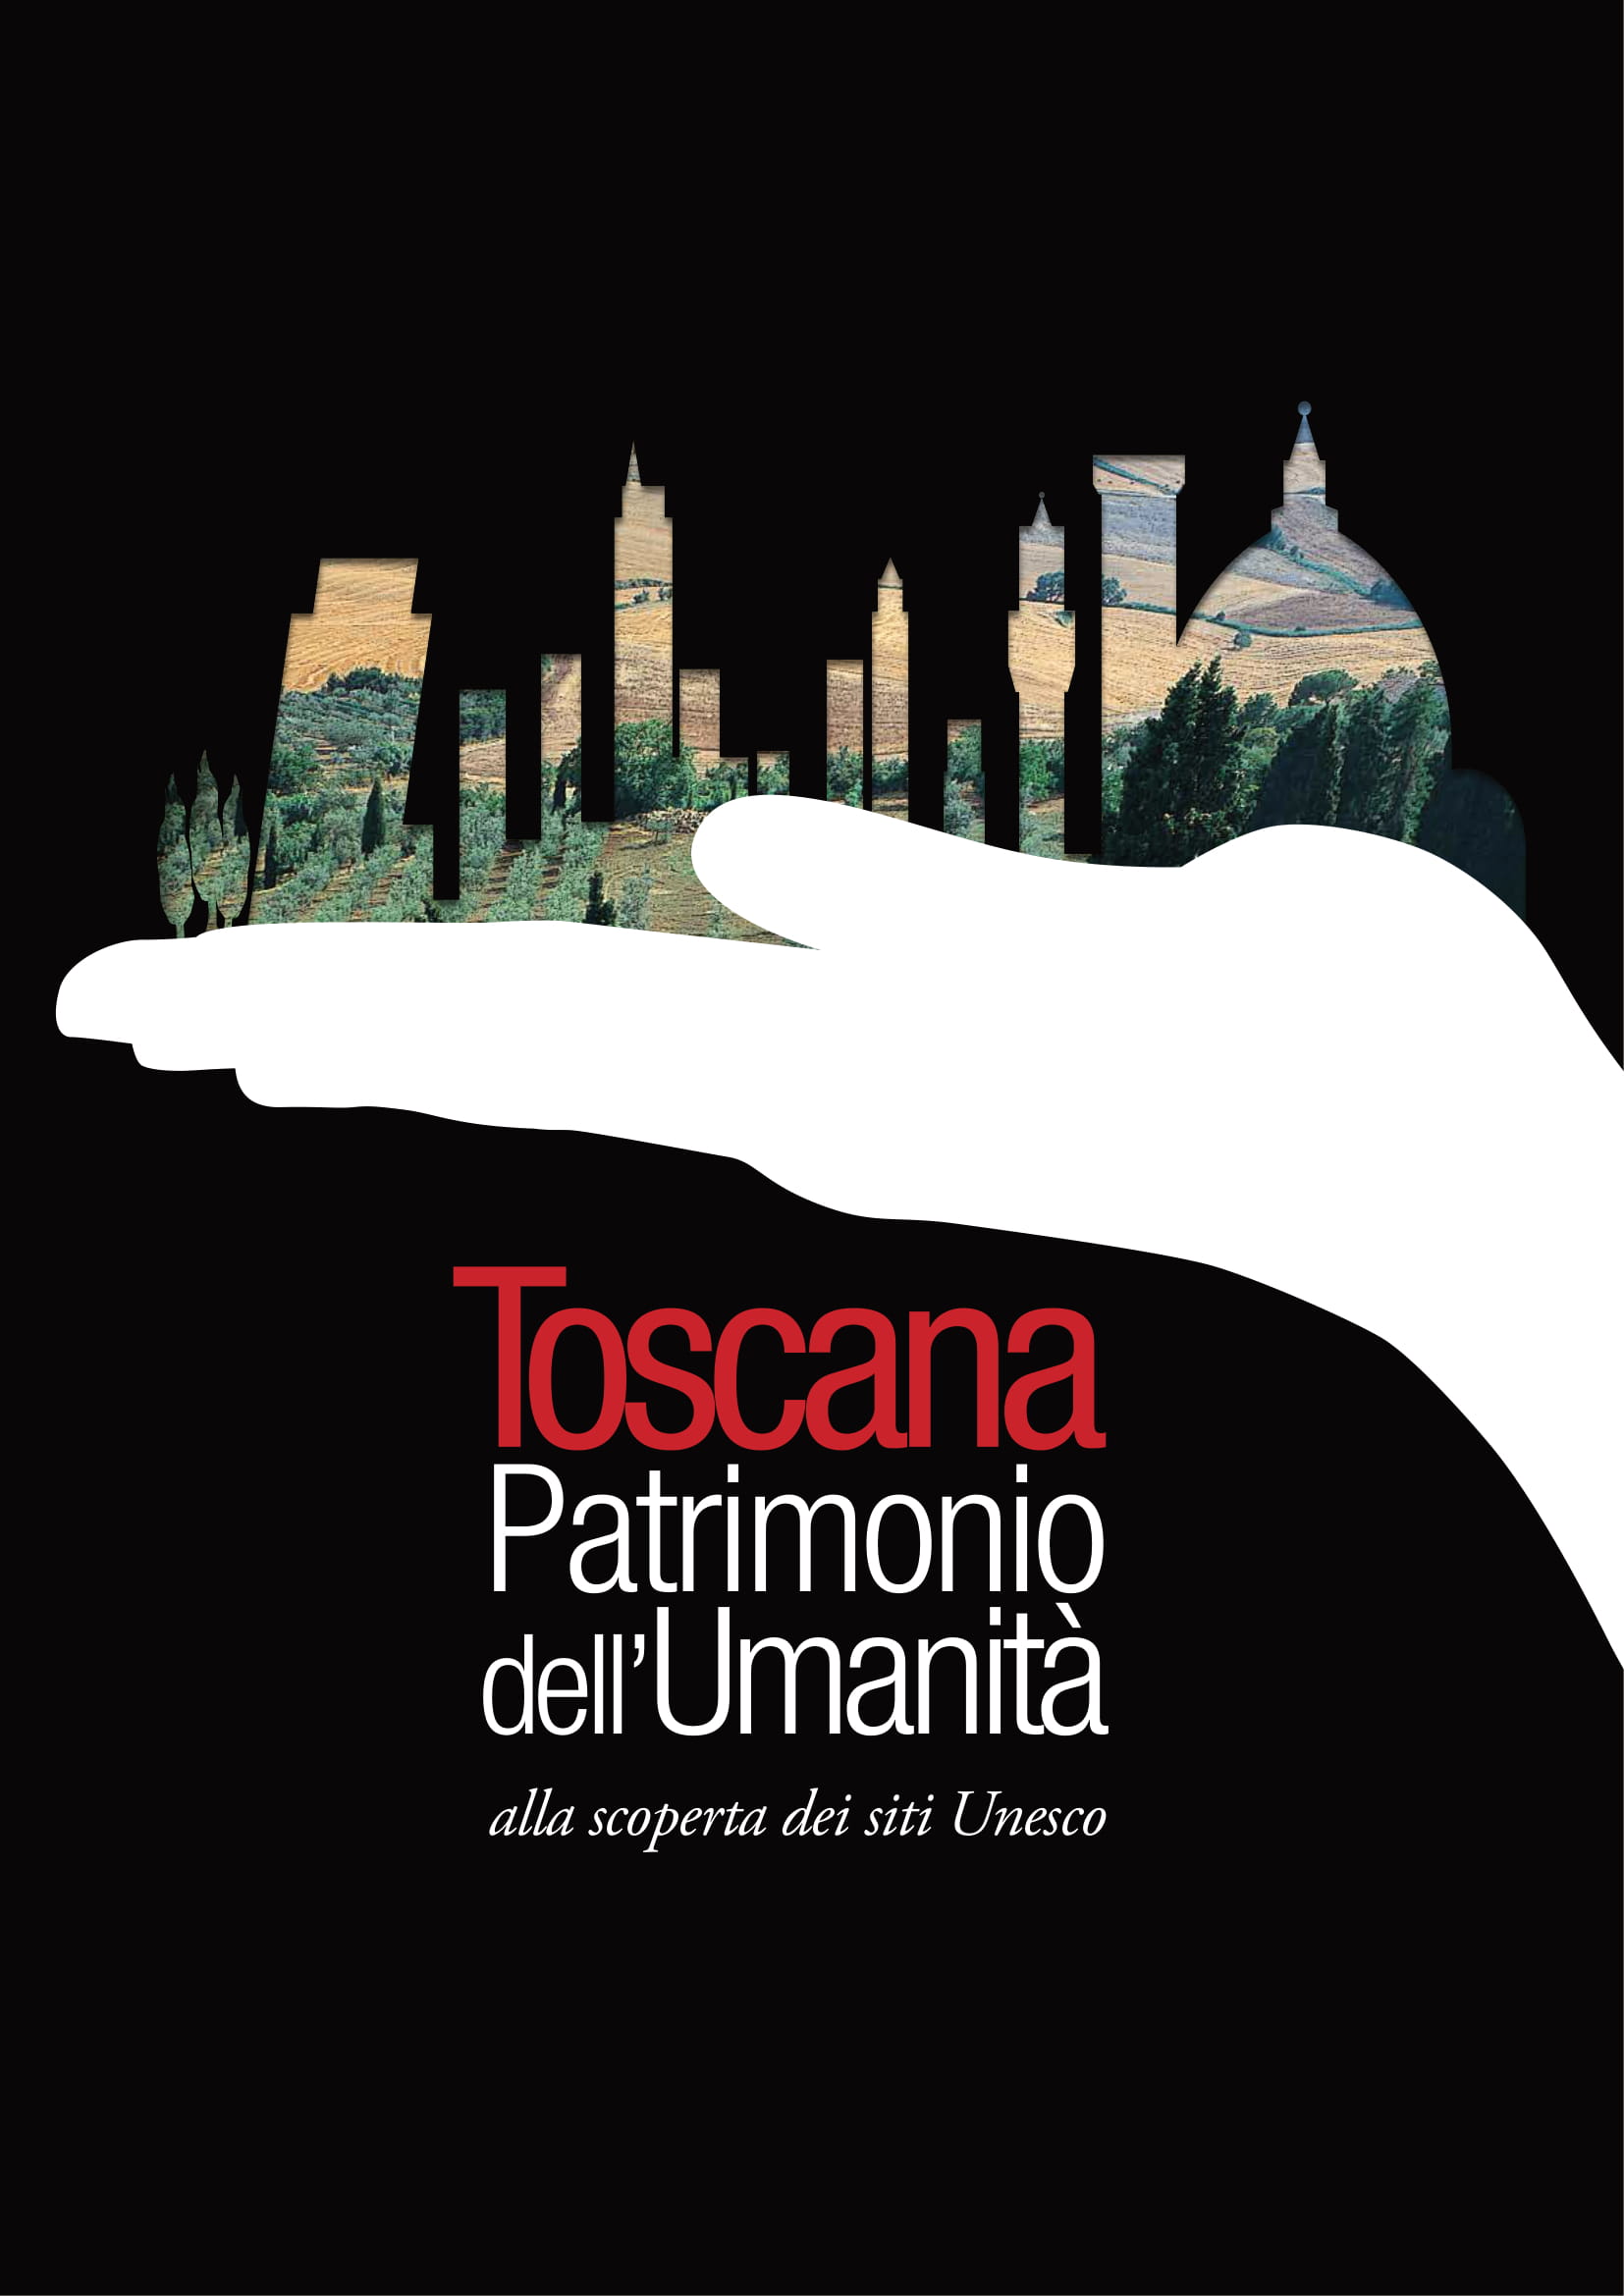 Toscana Patrimonio dell'Umanità _ alla scoperta dei siti Unesco